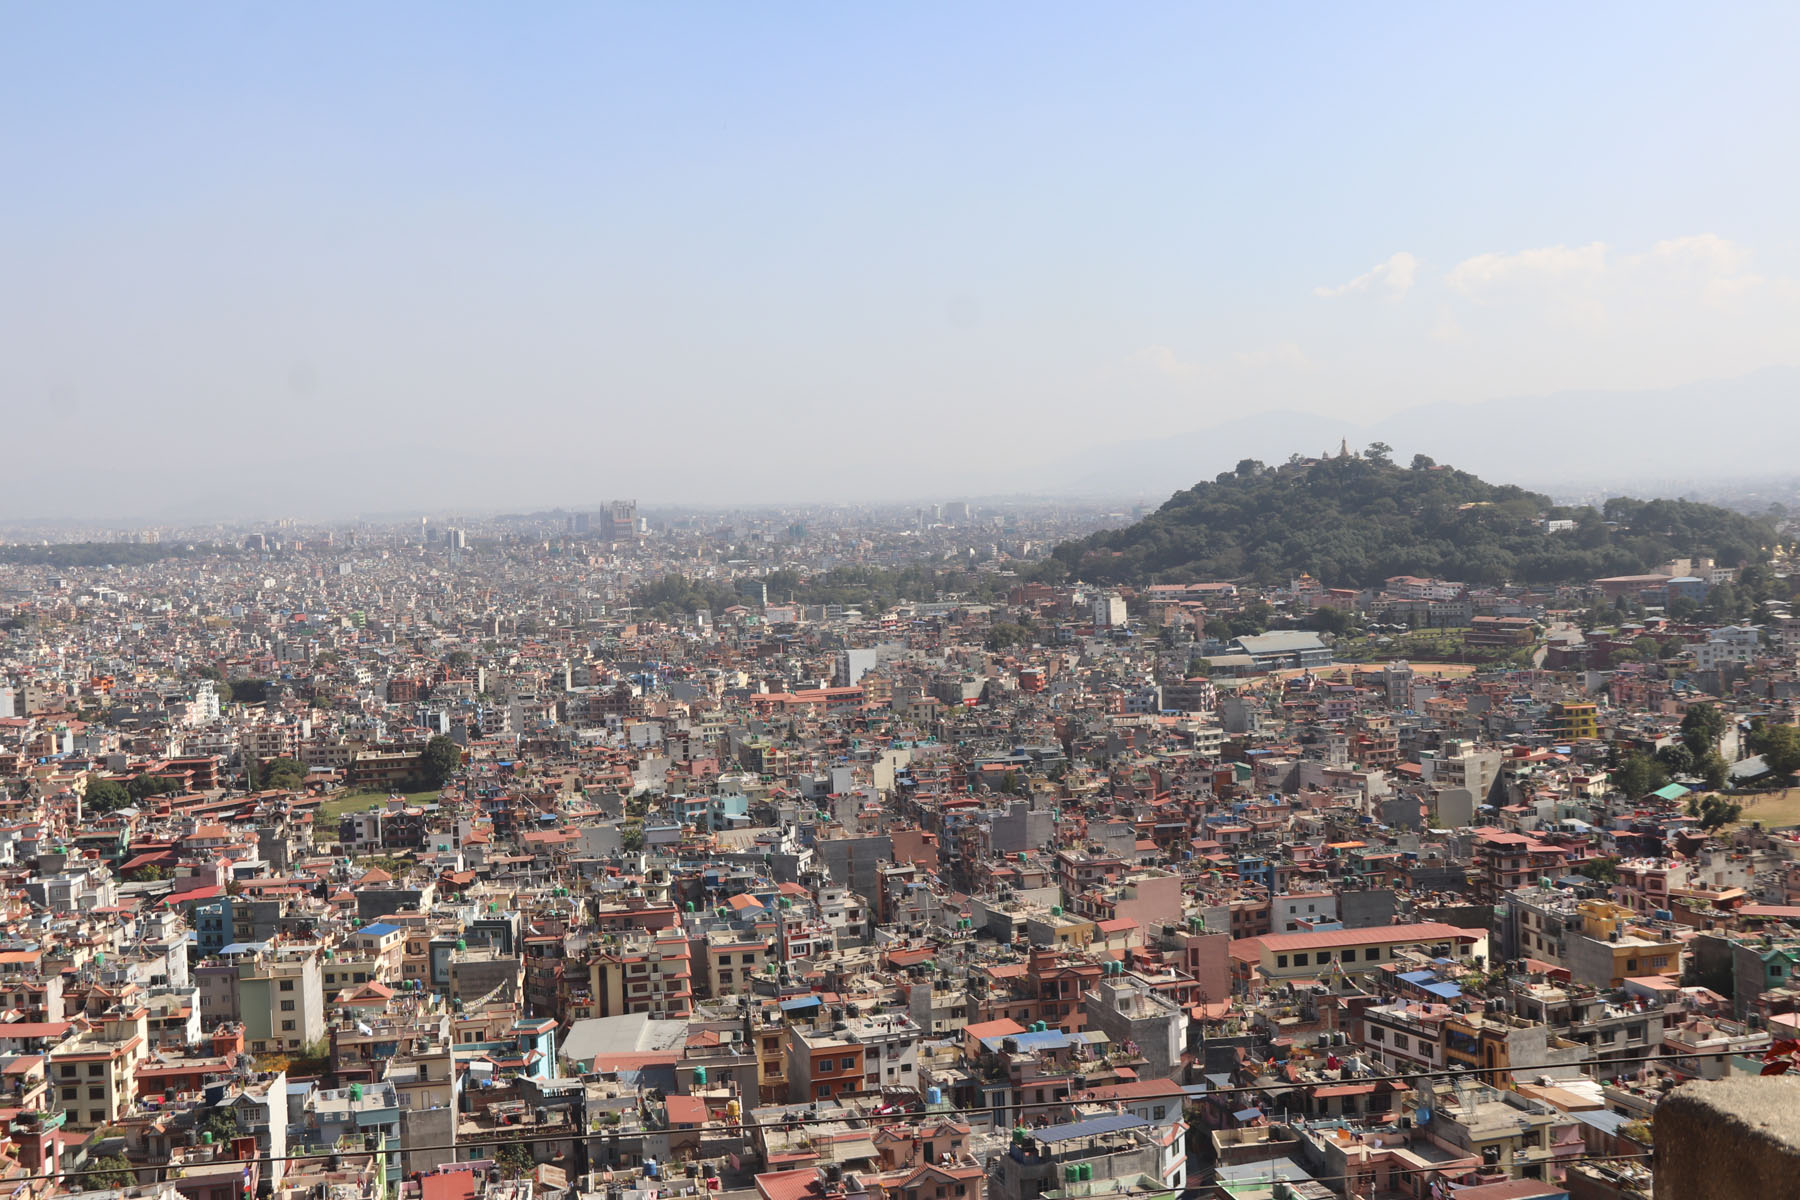 देशभरको मौसम बदली, काठमाडौंमा छिटपुट वर्षा